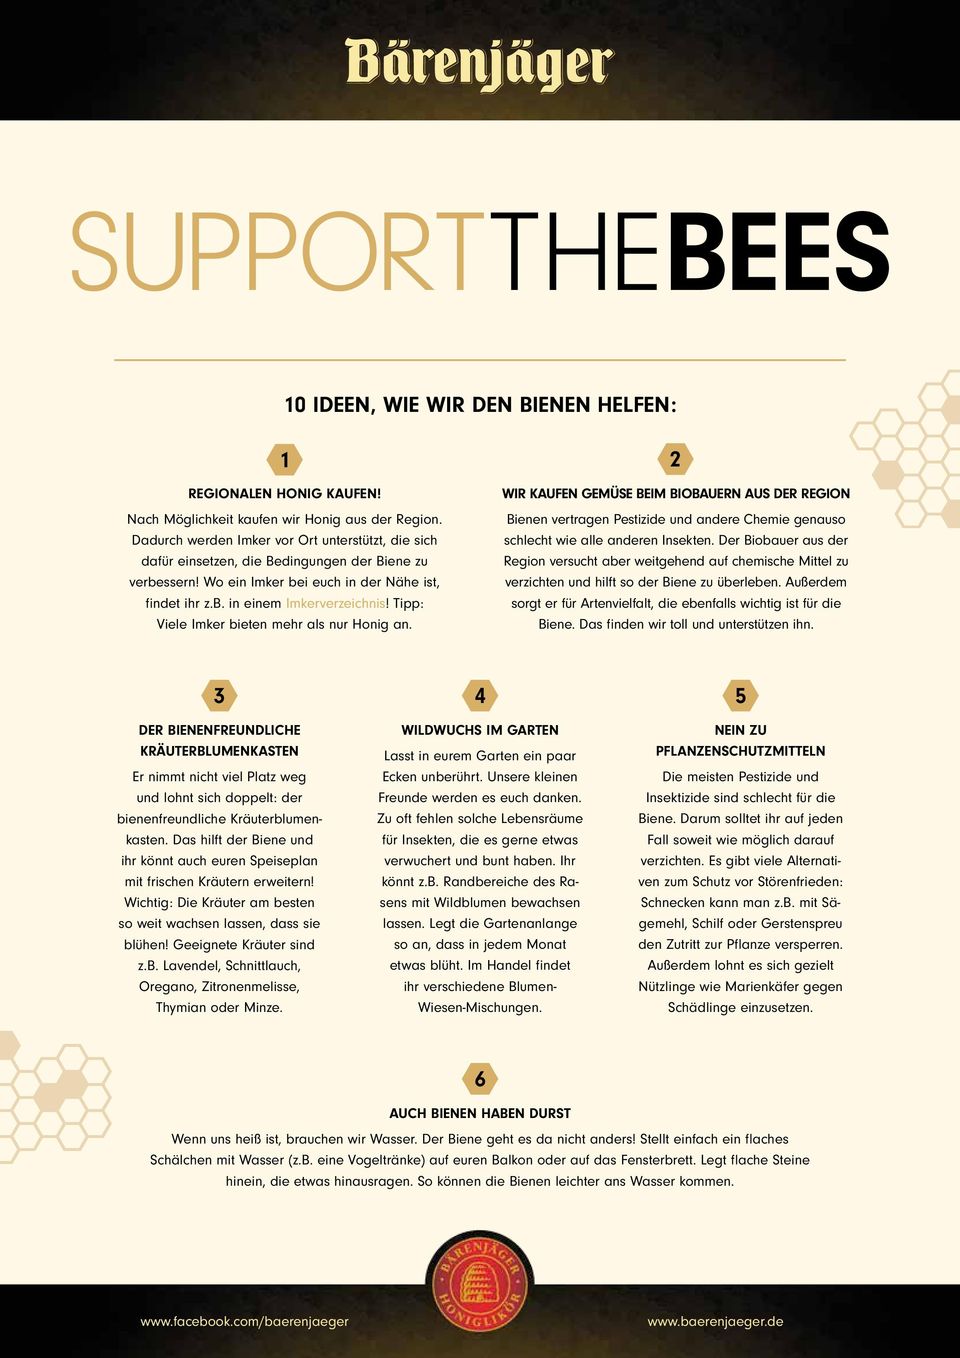 Tipp: Viele Imker bieten mehr als nur Honig an. 2 WIR KAUFEN GEMÜSE BEIM BIOBAUERN AUS DER REGION Bienen vertragen Pestizide und andere Chemie genauso schlecht wie alle anderen Insekten.